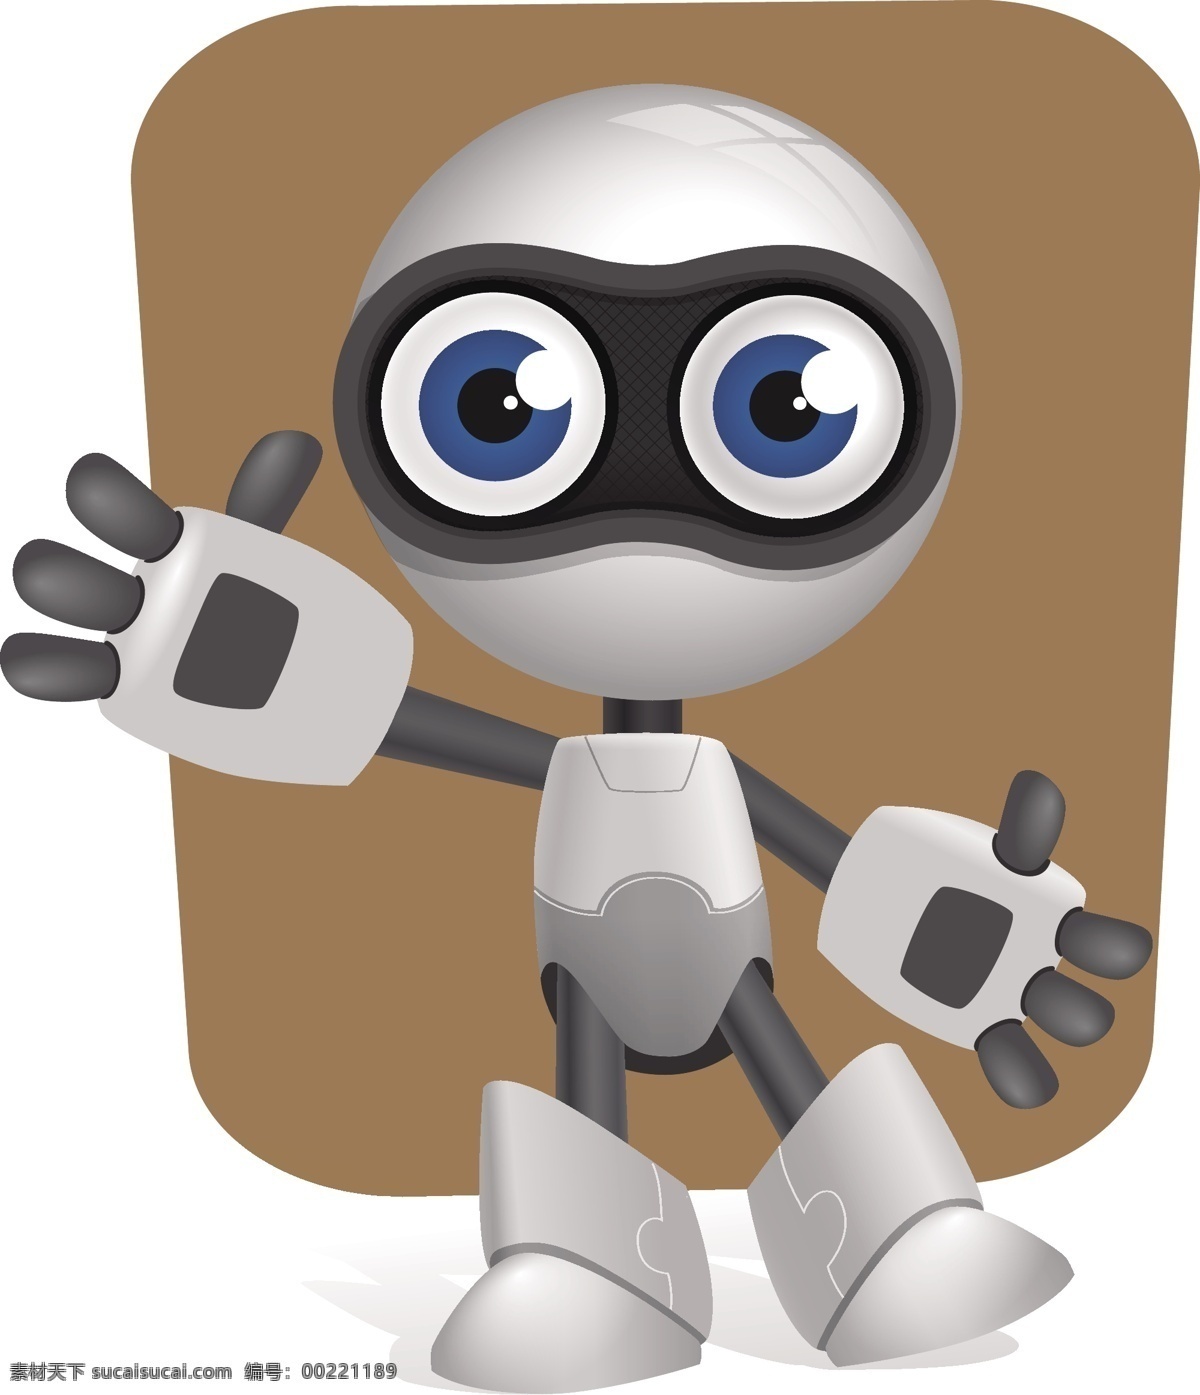 卡通机器人 机器人 人工智能 智能机器人 可爱 漫画 环保 机器人模板 机器人模型 机器人形 卡通造型 摄像头设计 3d卡通机器 可爱卡通 卡通设计